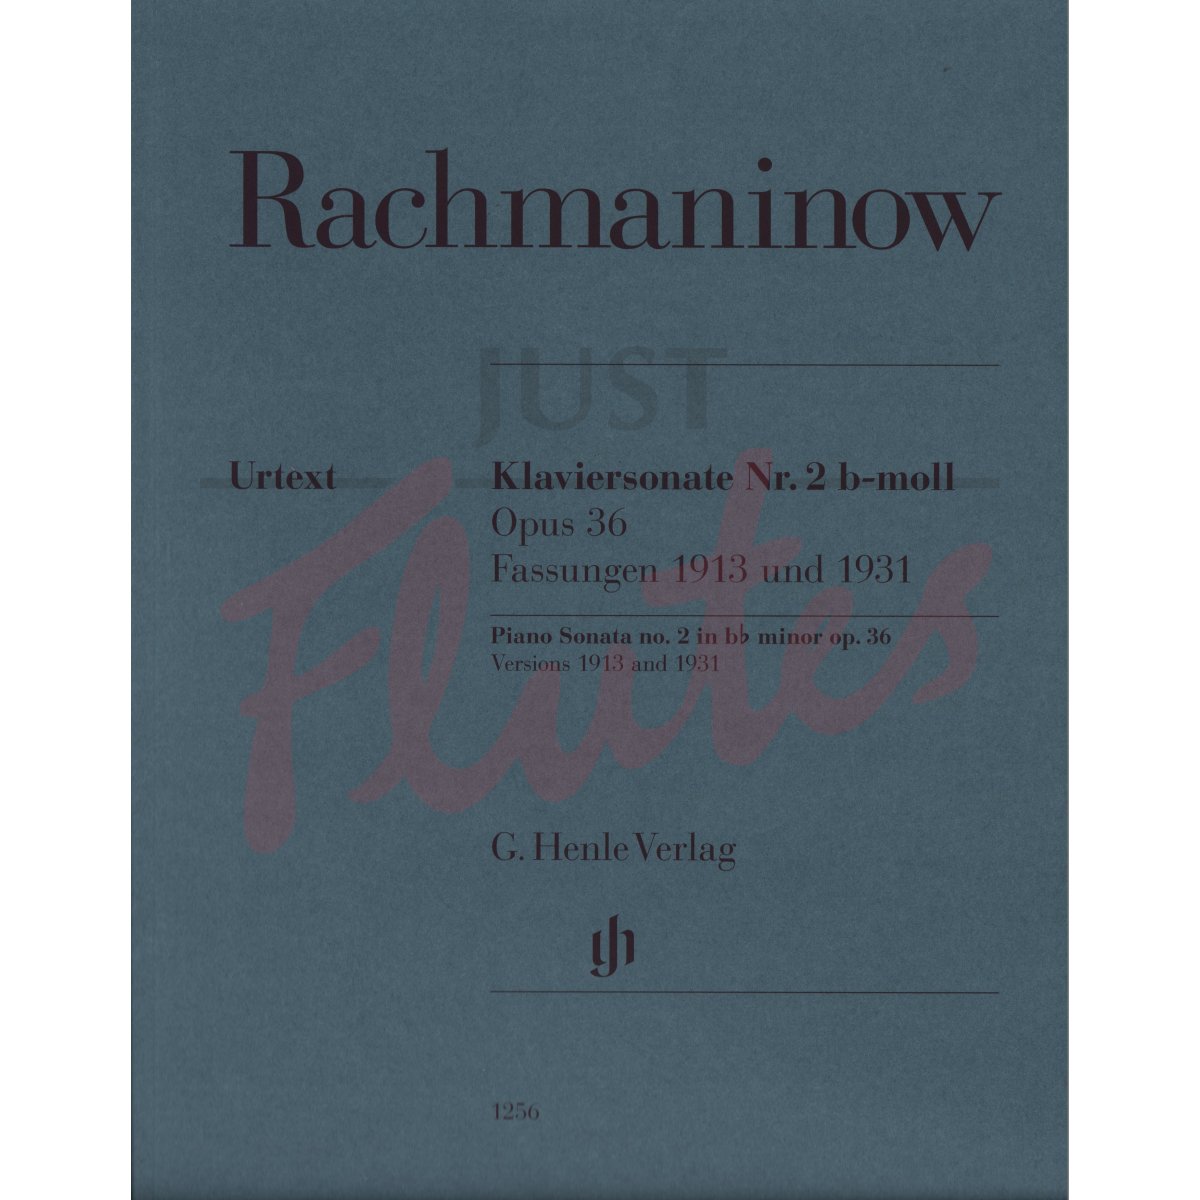 Piano Sonata No.2 in Bb minor, Versions 1913 and 1931